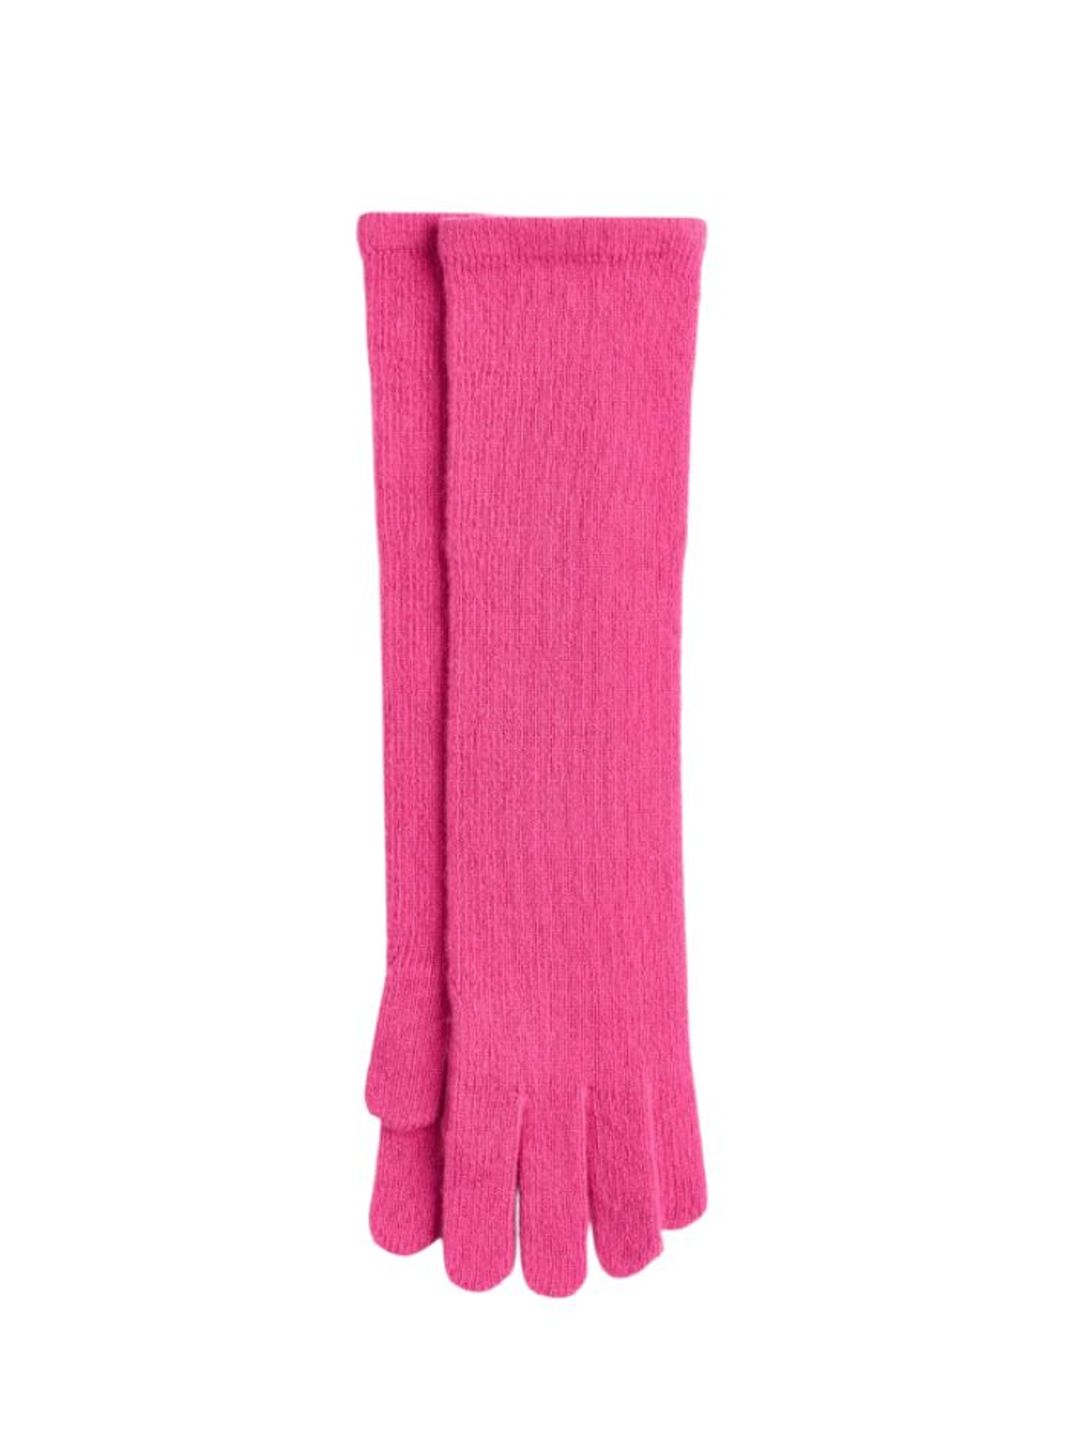 Pink long wool gloves